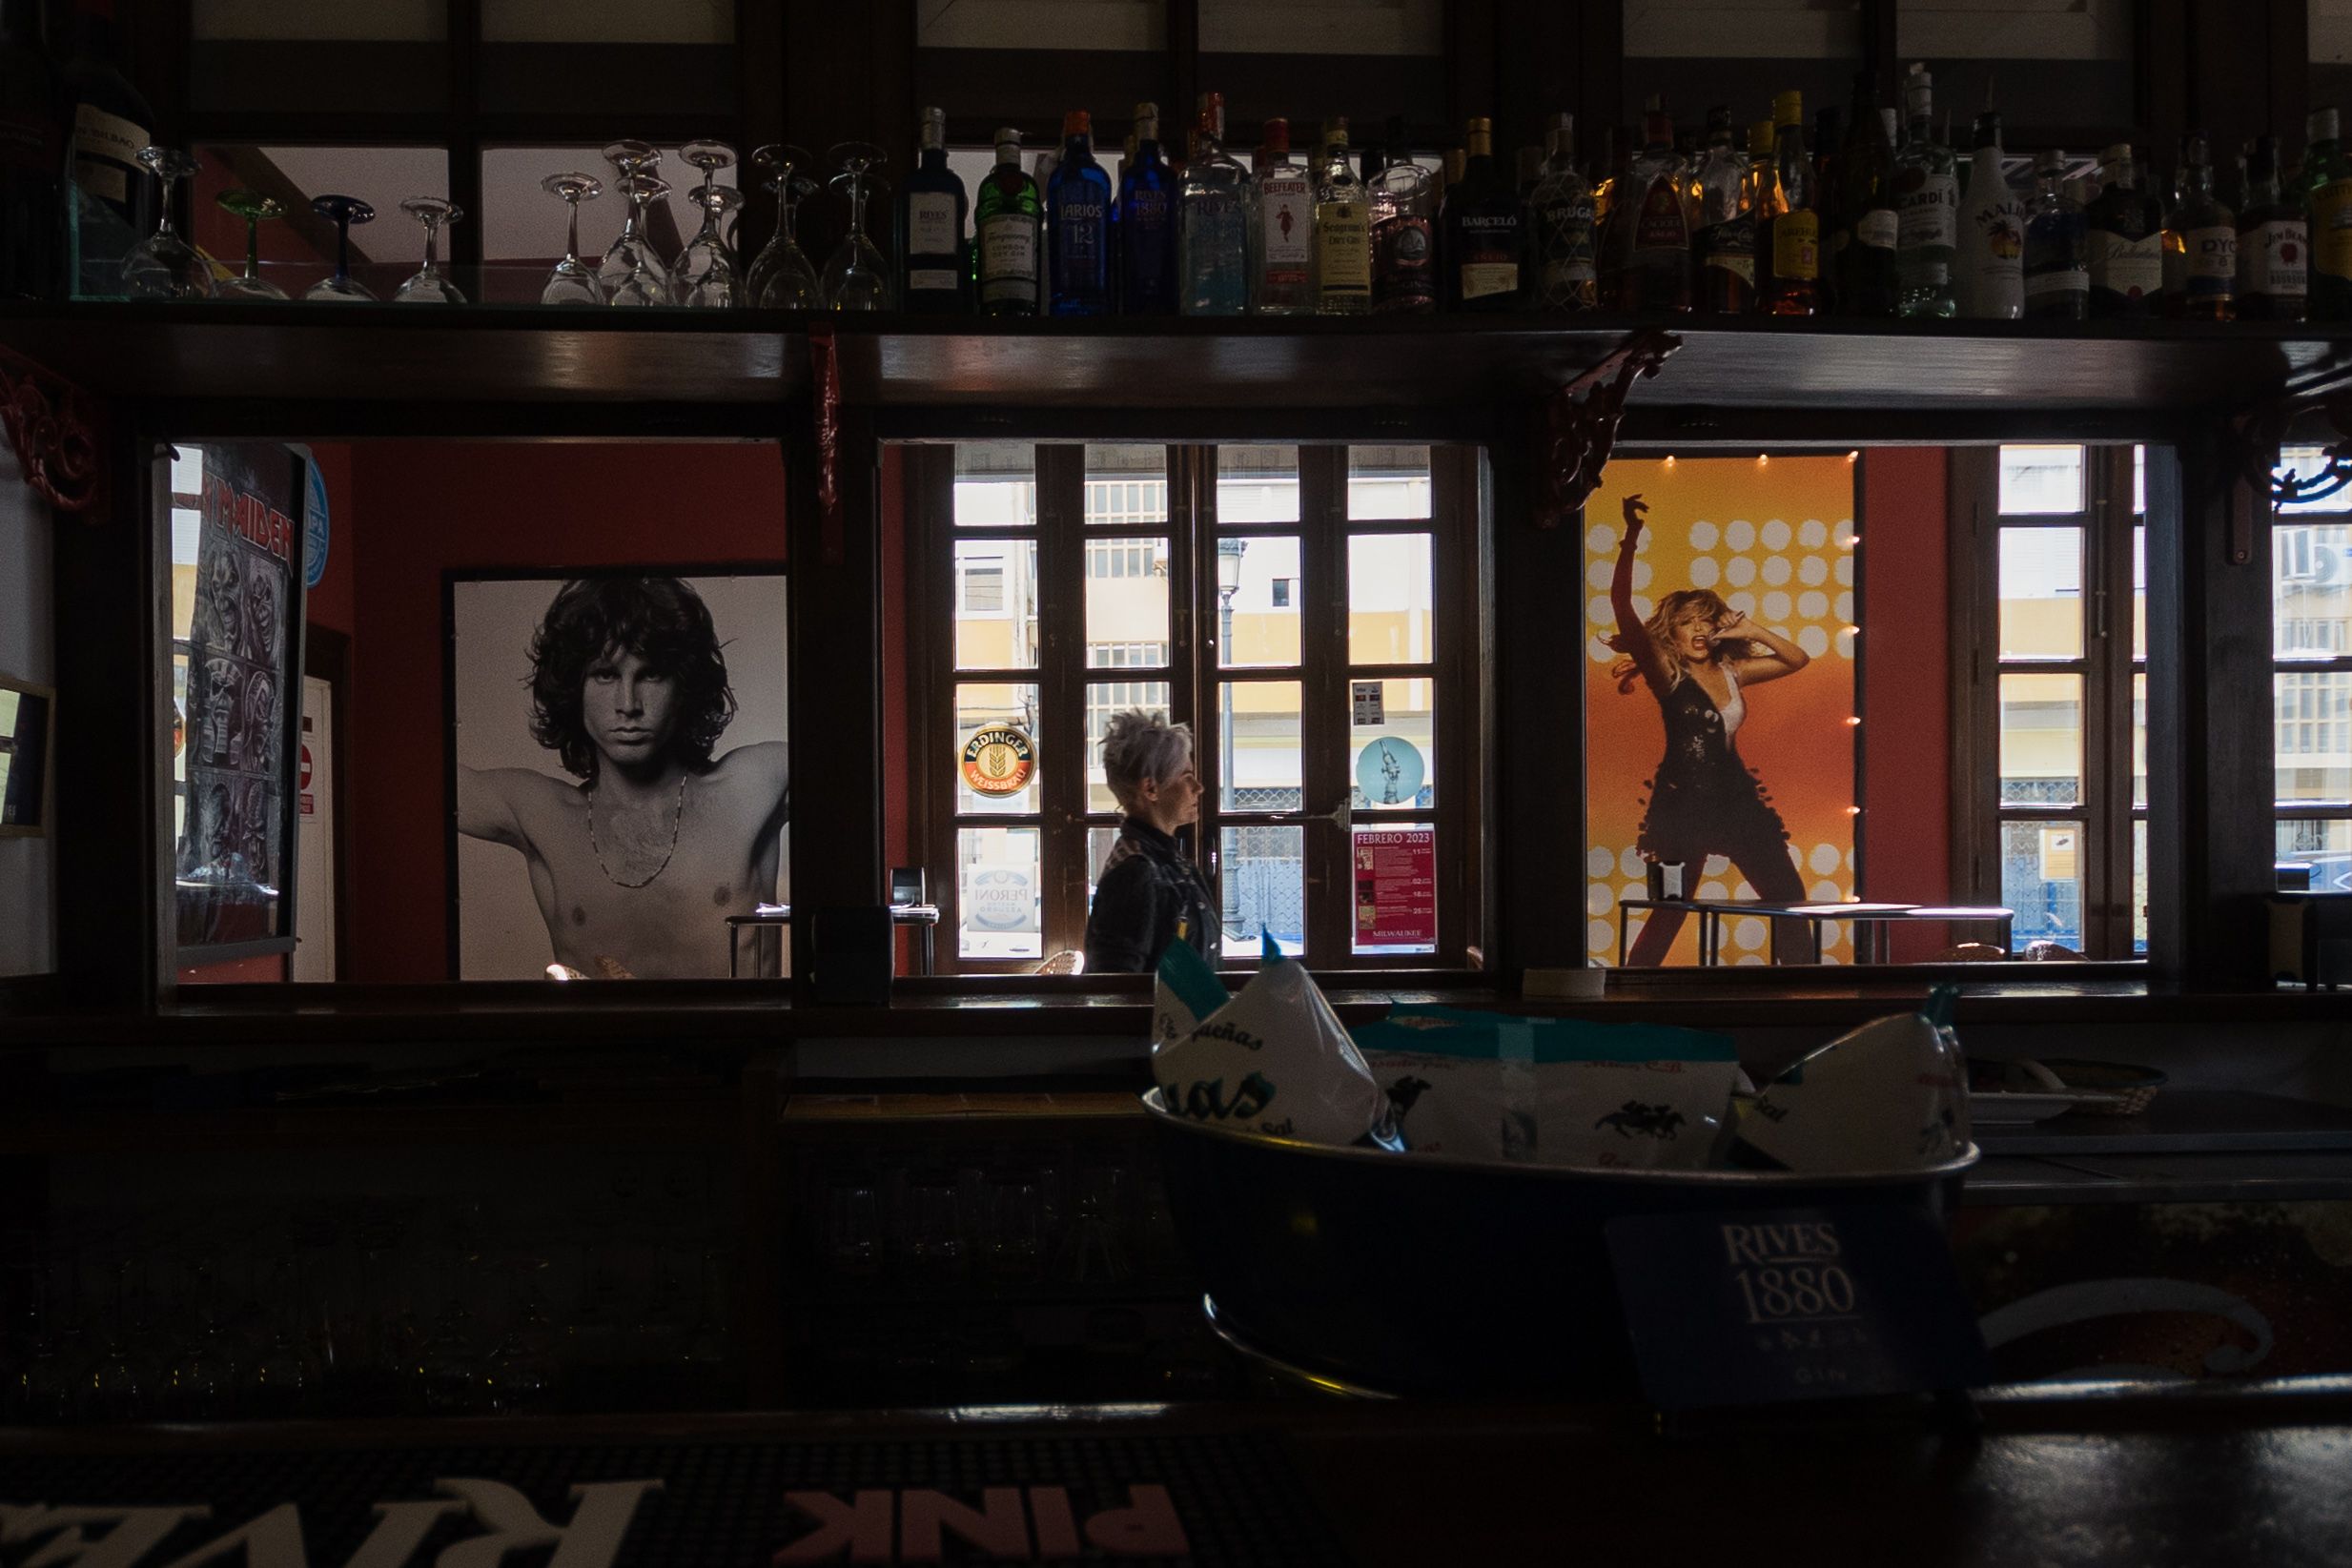 Decoración del interior del establecimiento con fotografías de estrellas del rock. 